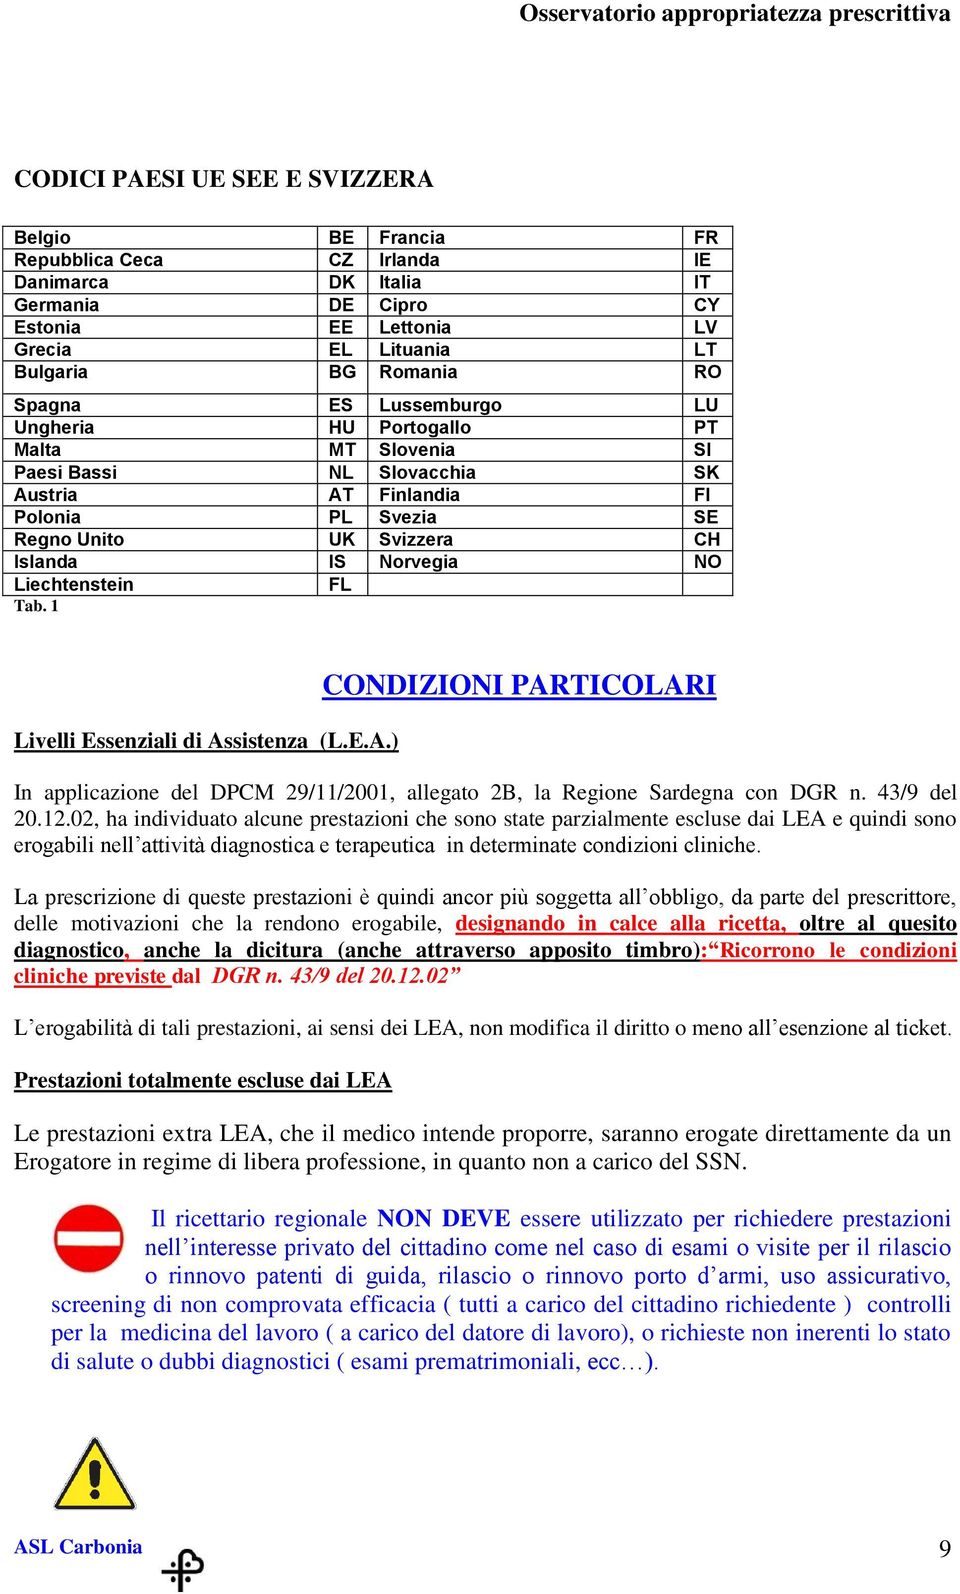 Liechtenstein FL Tab. 1 Livelli Essenziali di Assistenza (L.E.A.) CONDIZIONI PARTICOLARI In applicazione del DPCM 29/11/2001, allegato 2B, la Regione Sardegna con DGR n. 43/9 del 20.12.